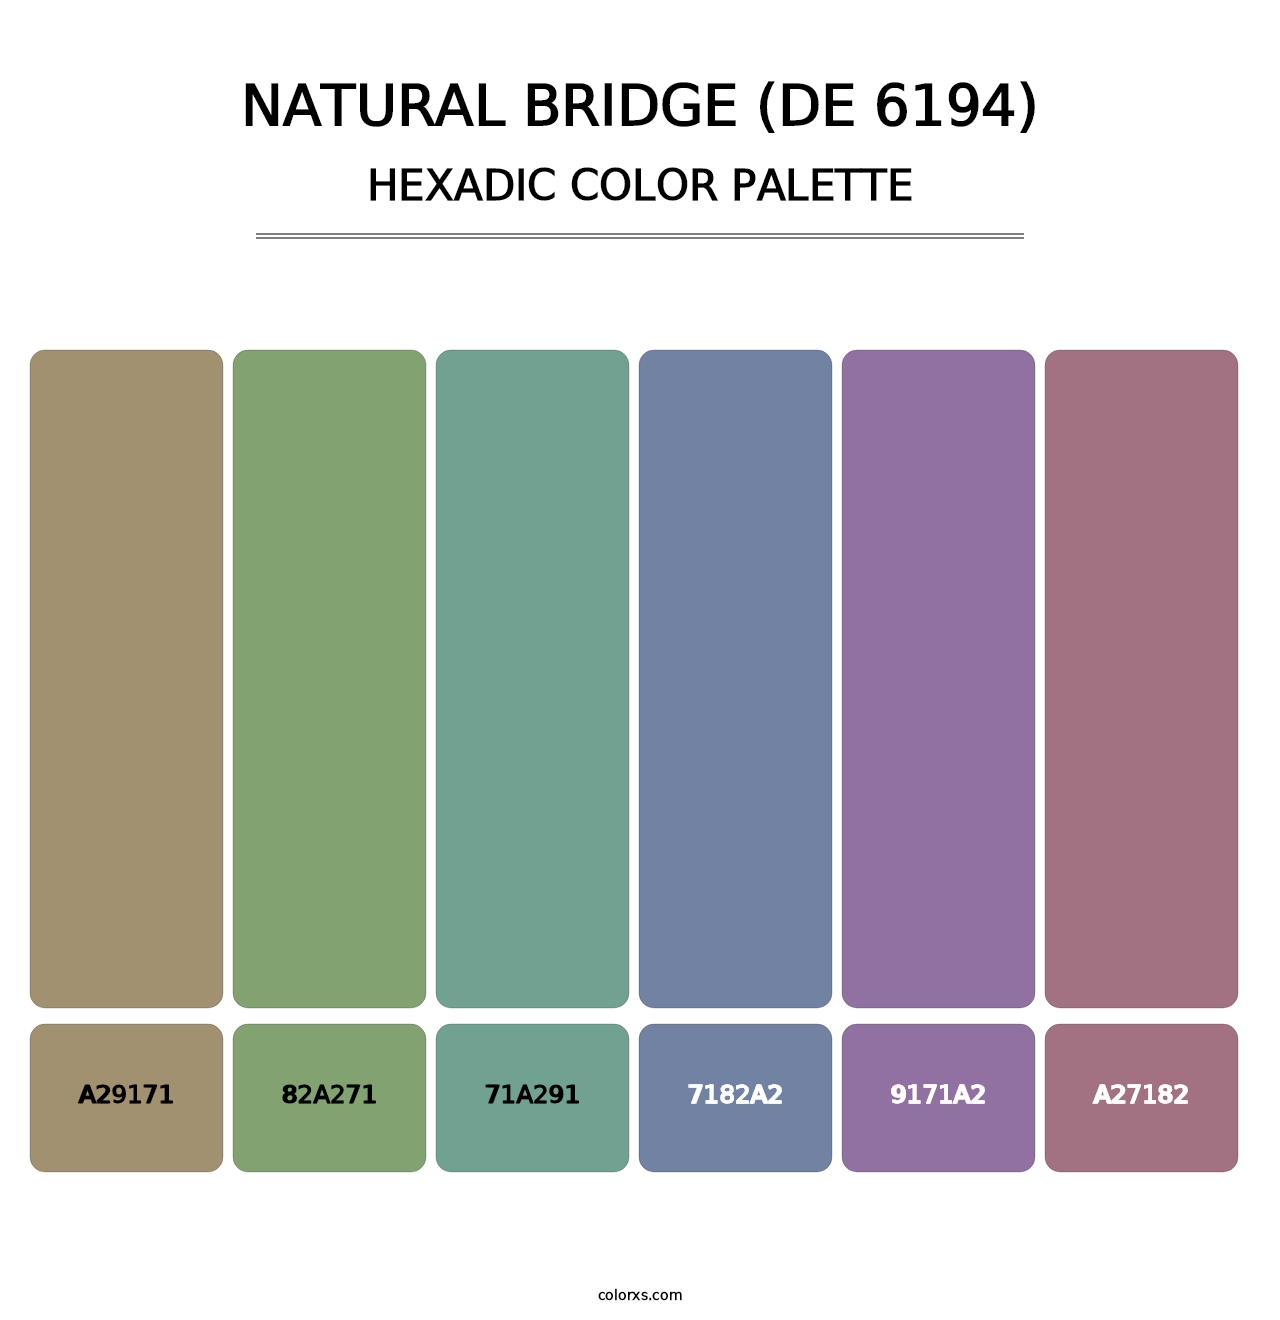 Natural Bridge (DE 6194) - Hexadic Color Palette